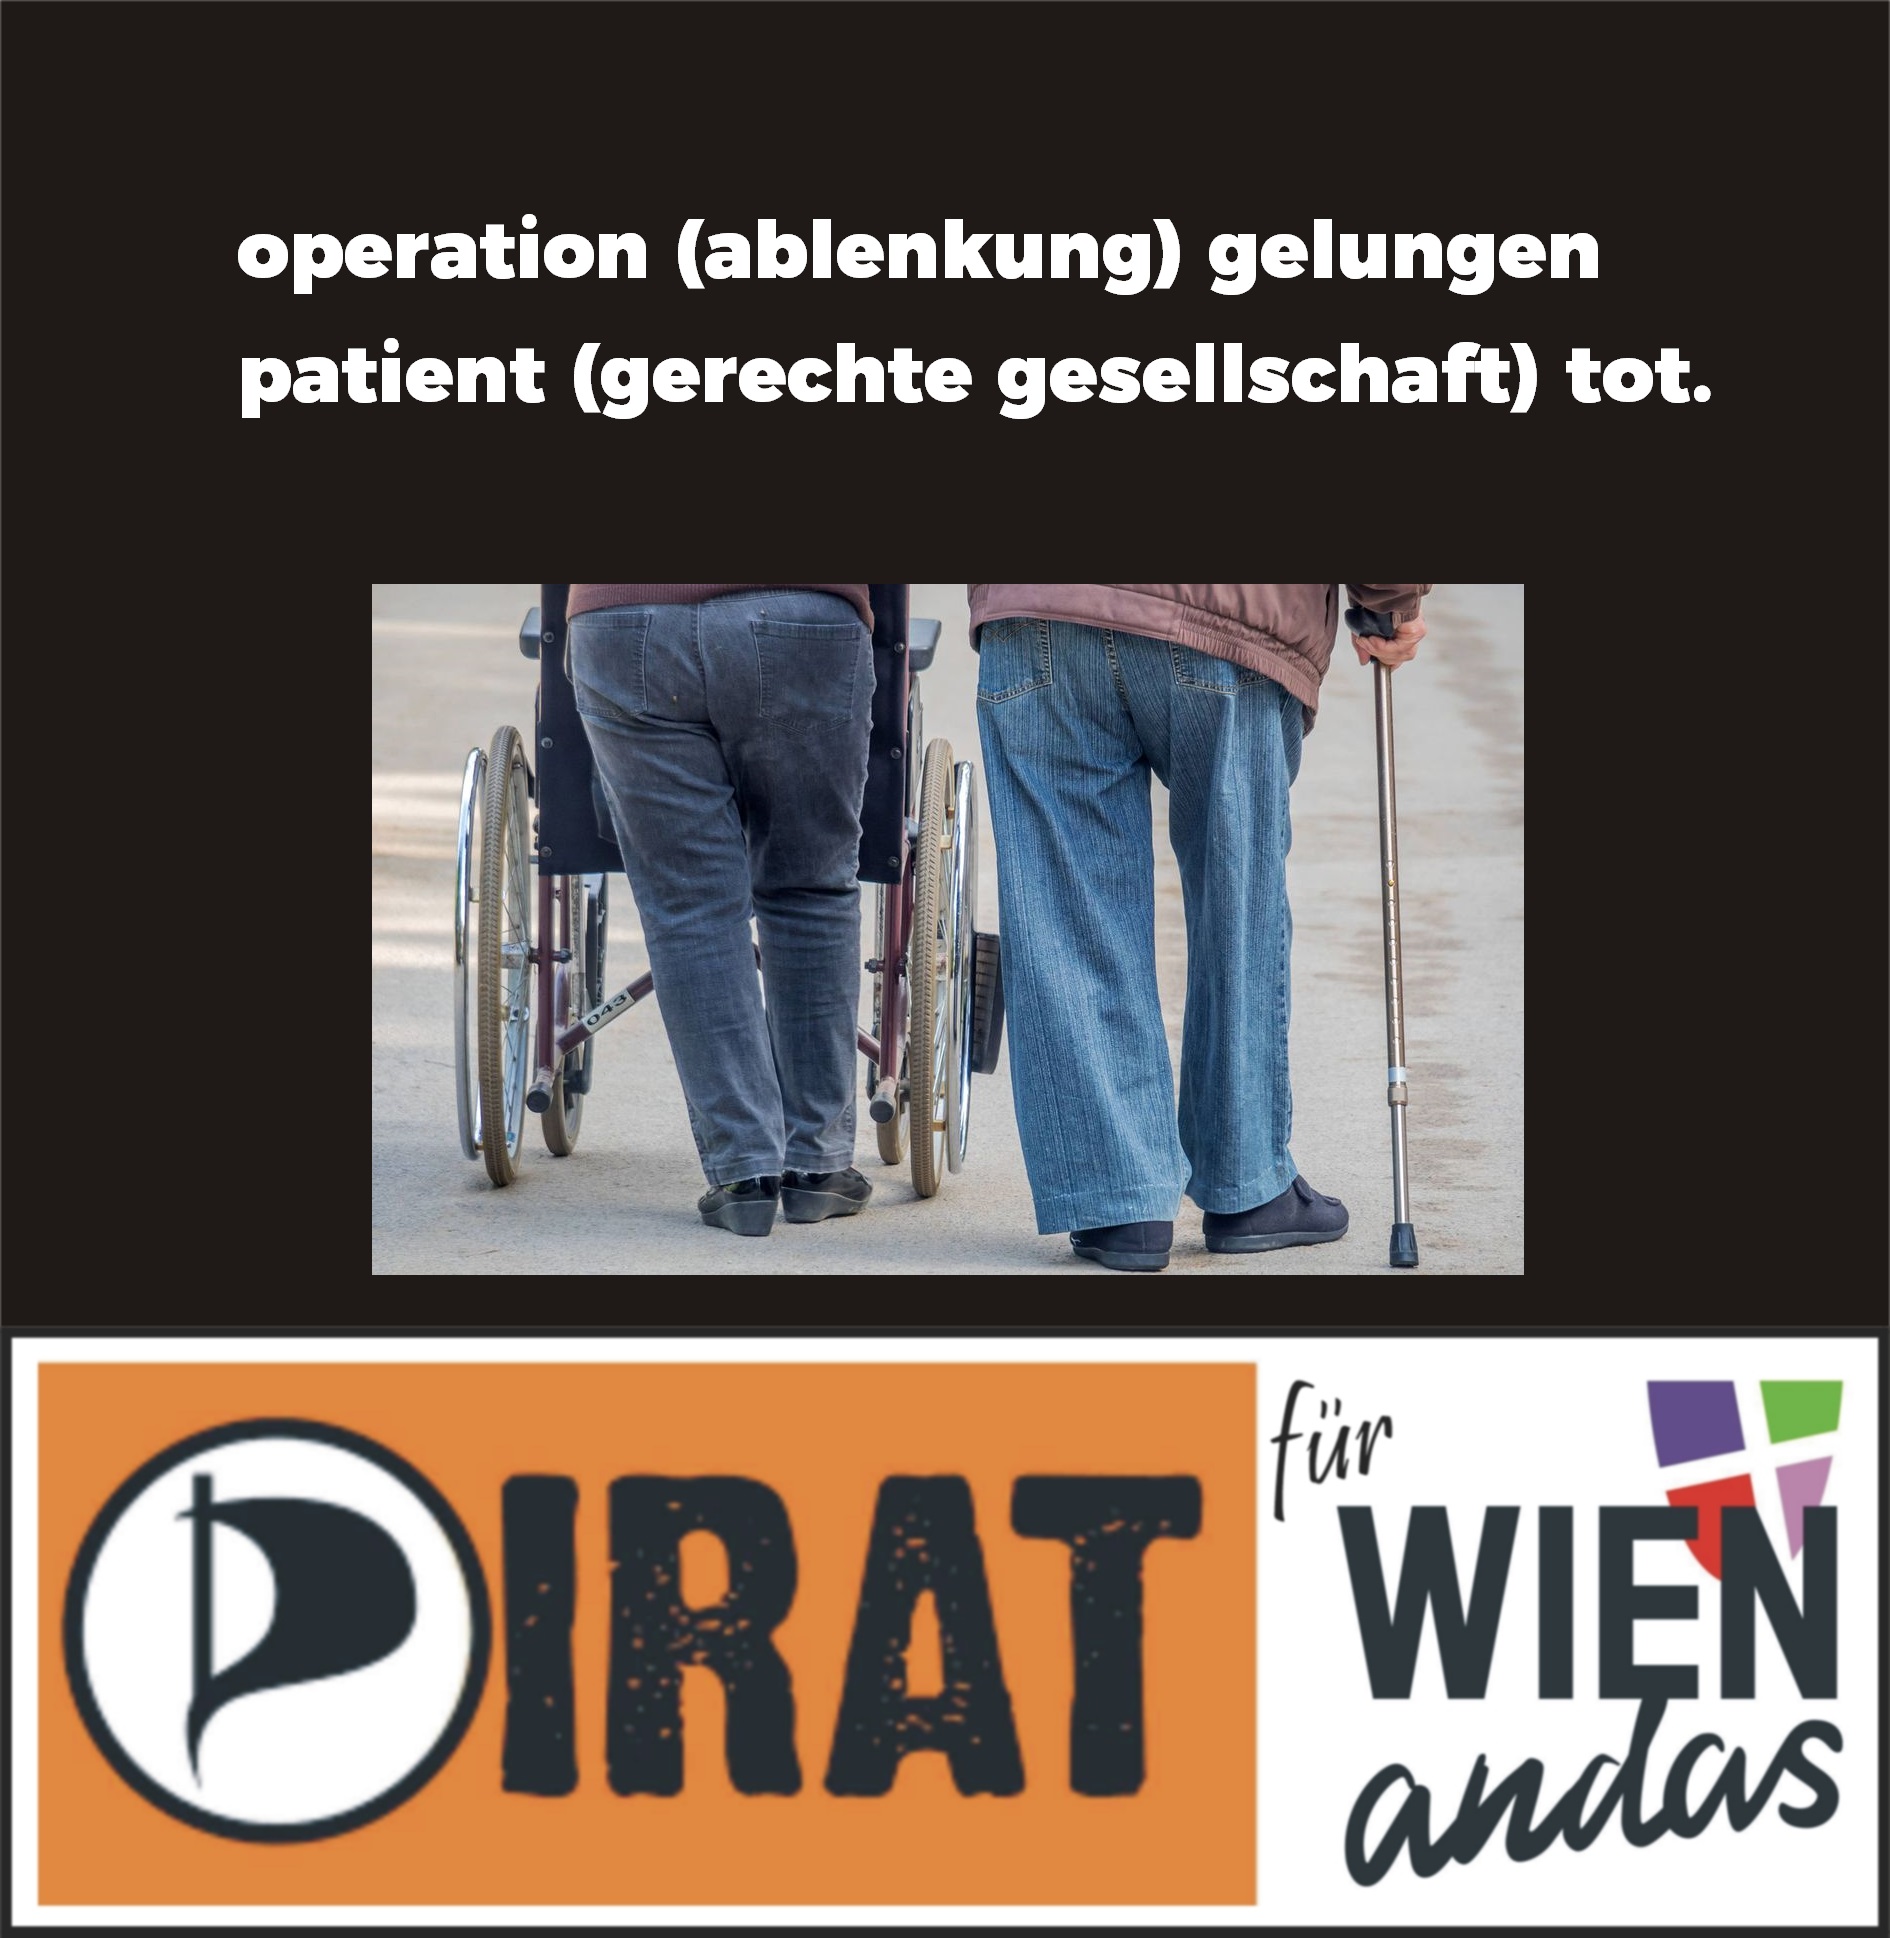 operation (ablenkung) gelungen – patient (gerechte gesellschaft) tot.